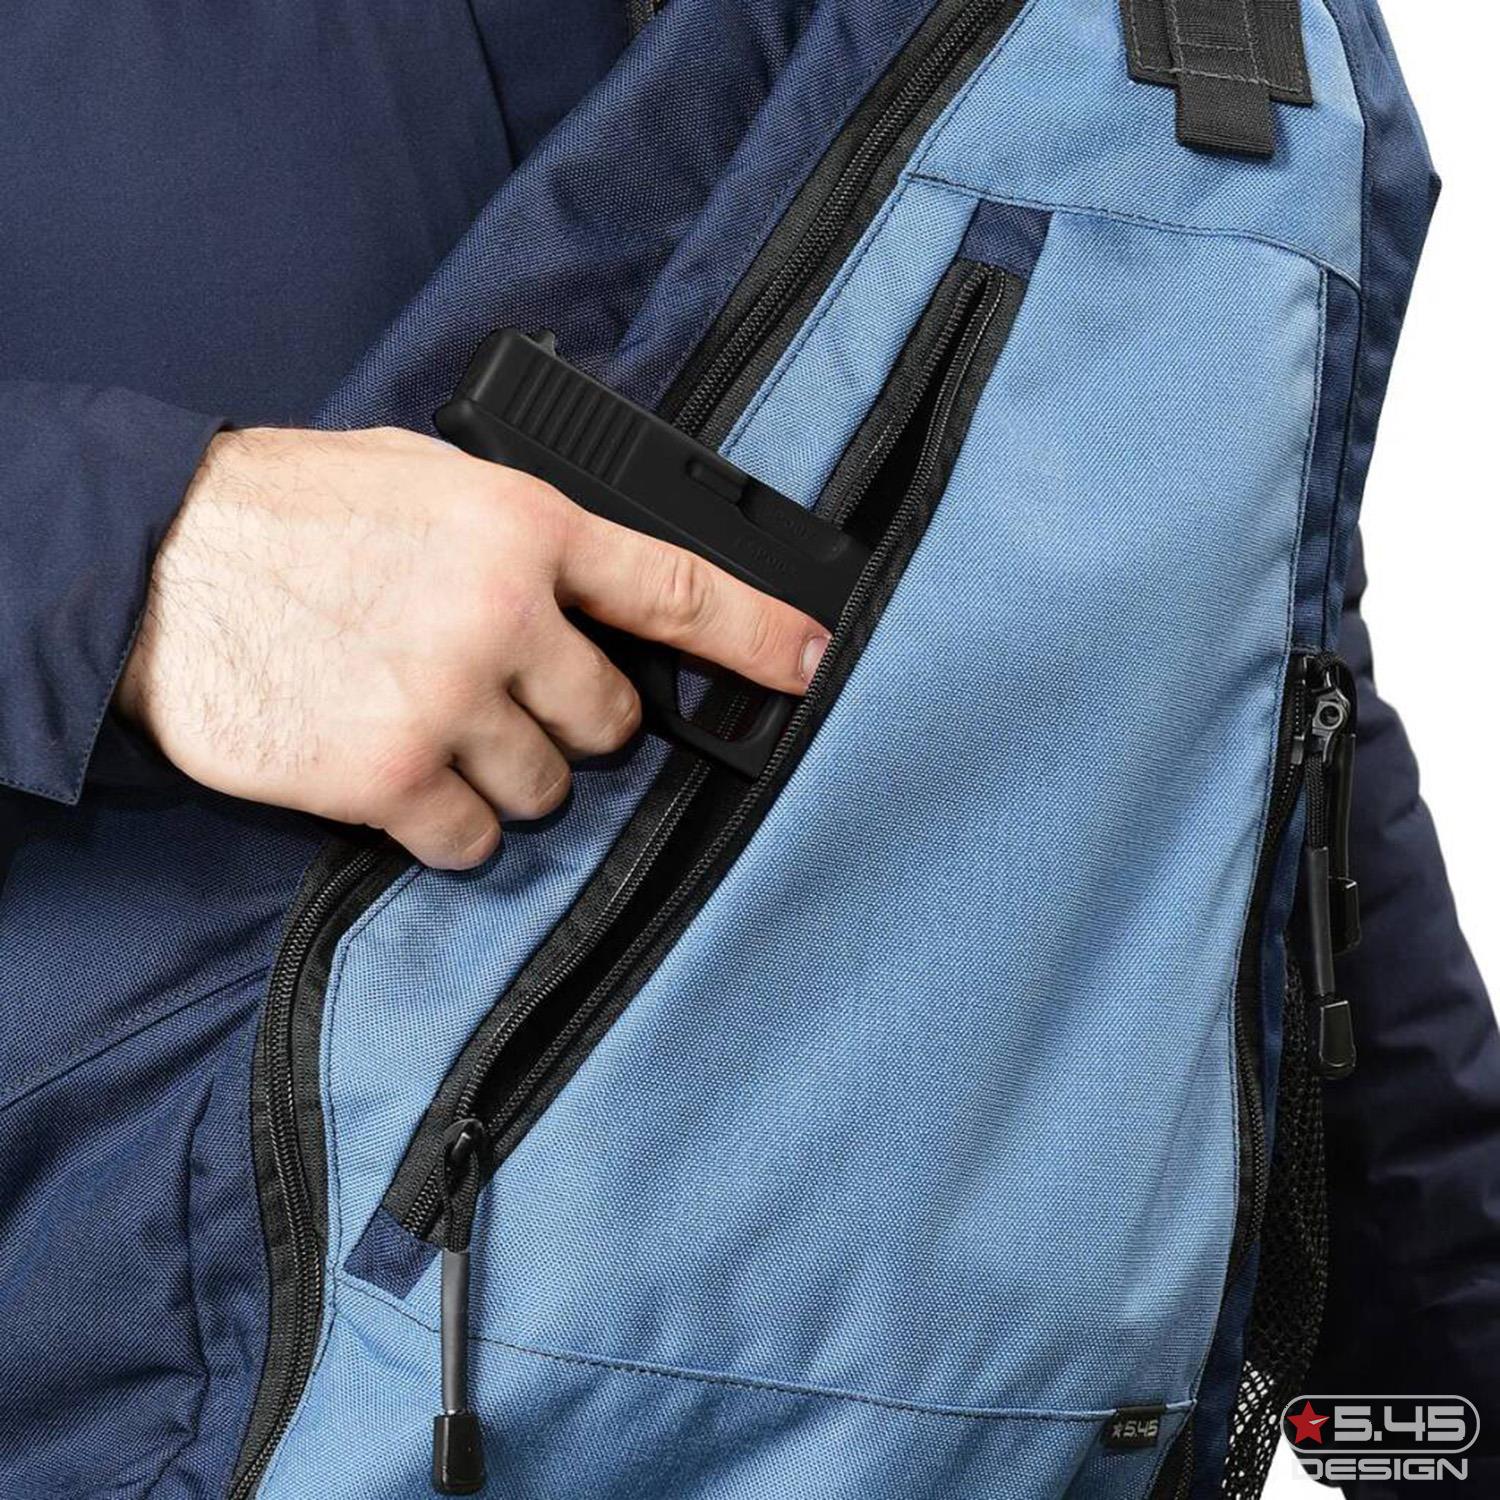 Удобная и прочная конструкция сумки позволяет вам не привлекая внимания переносить своё оружие.